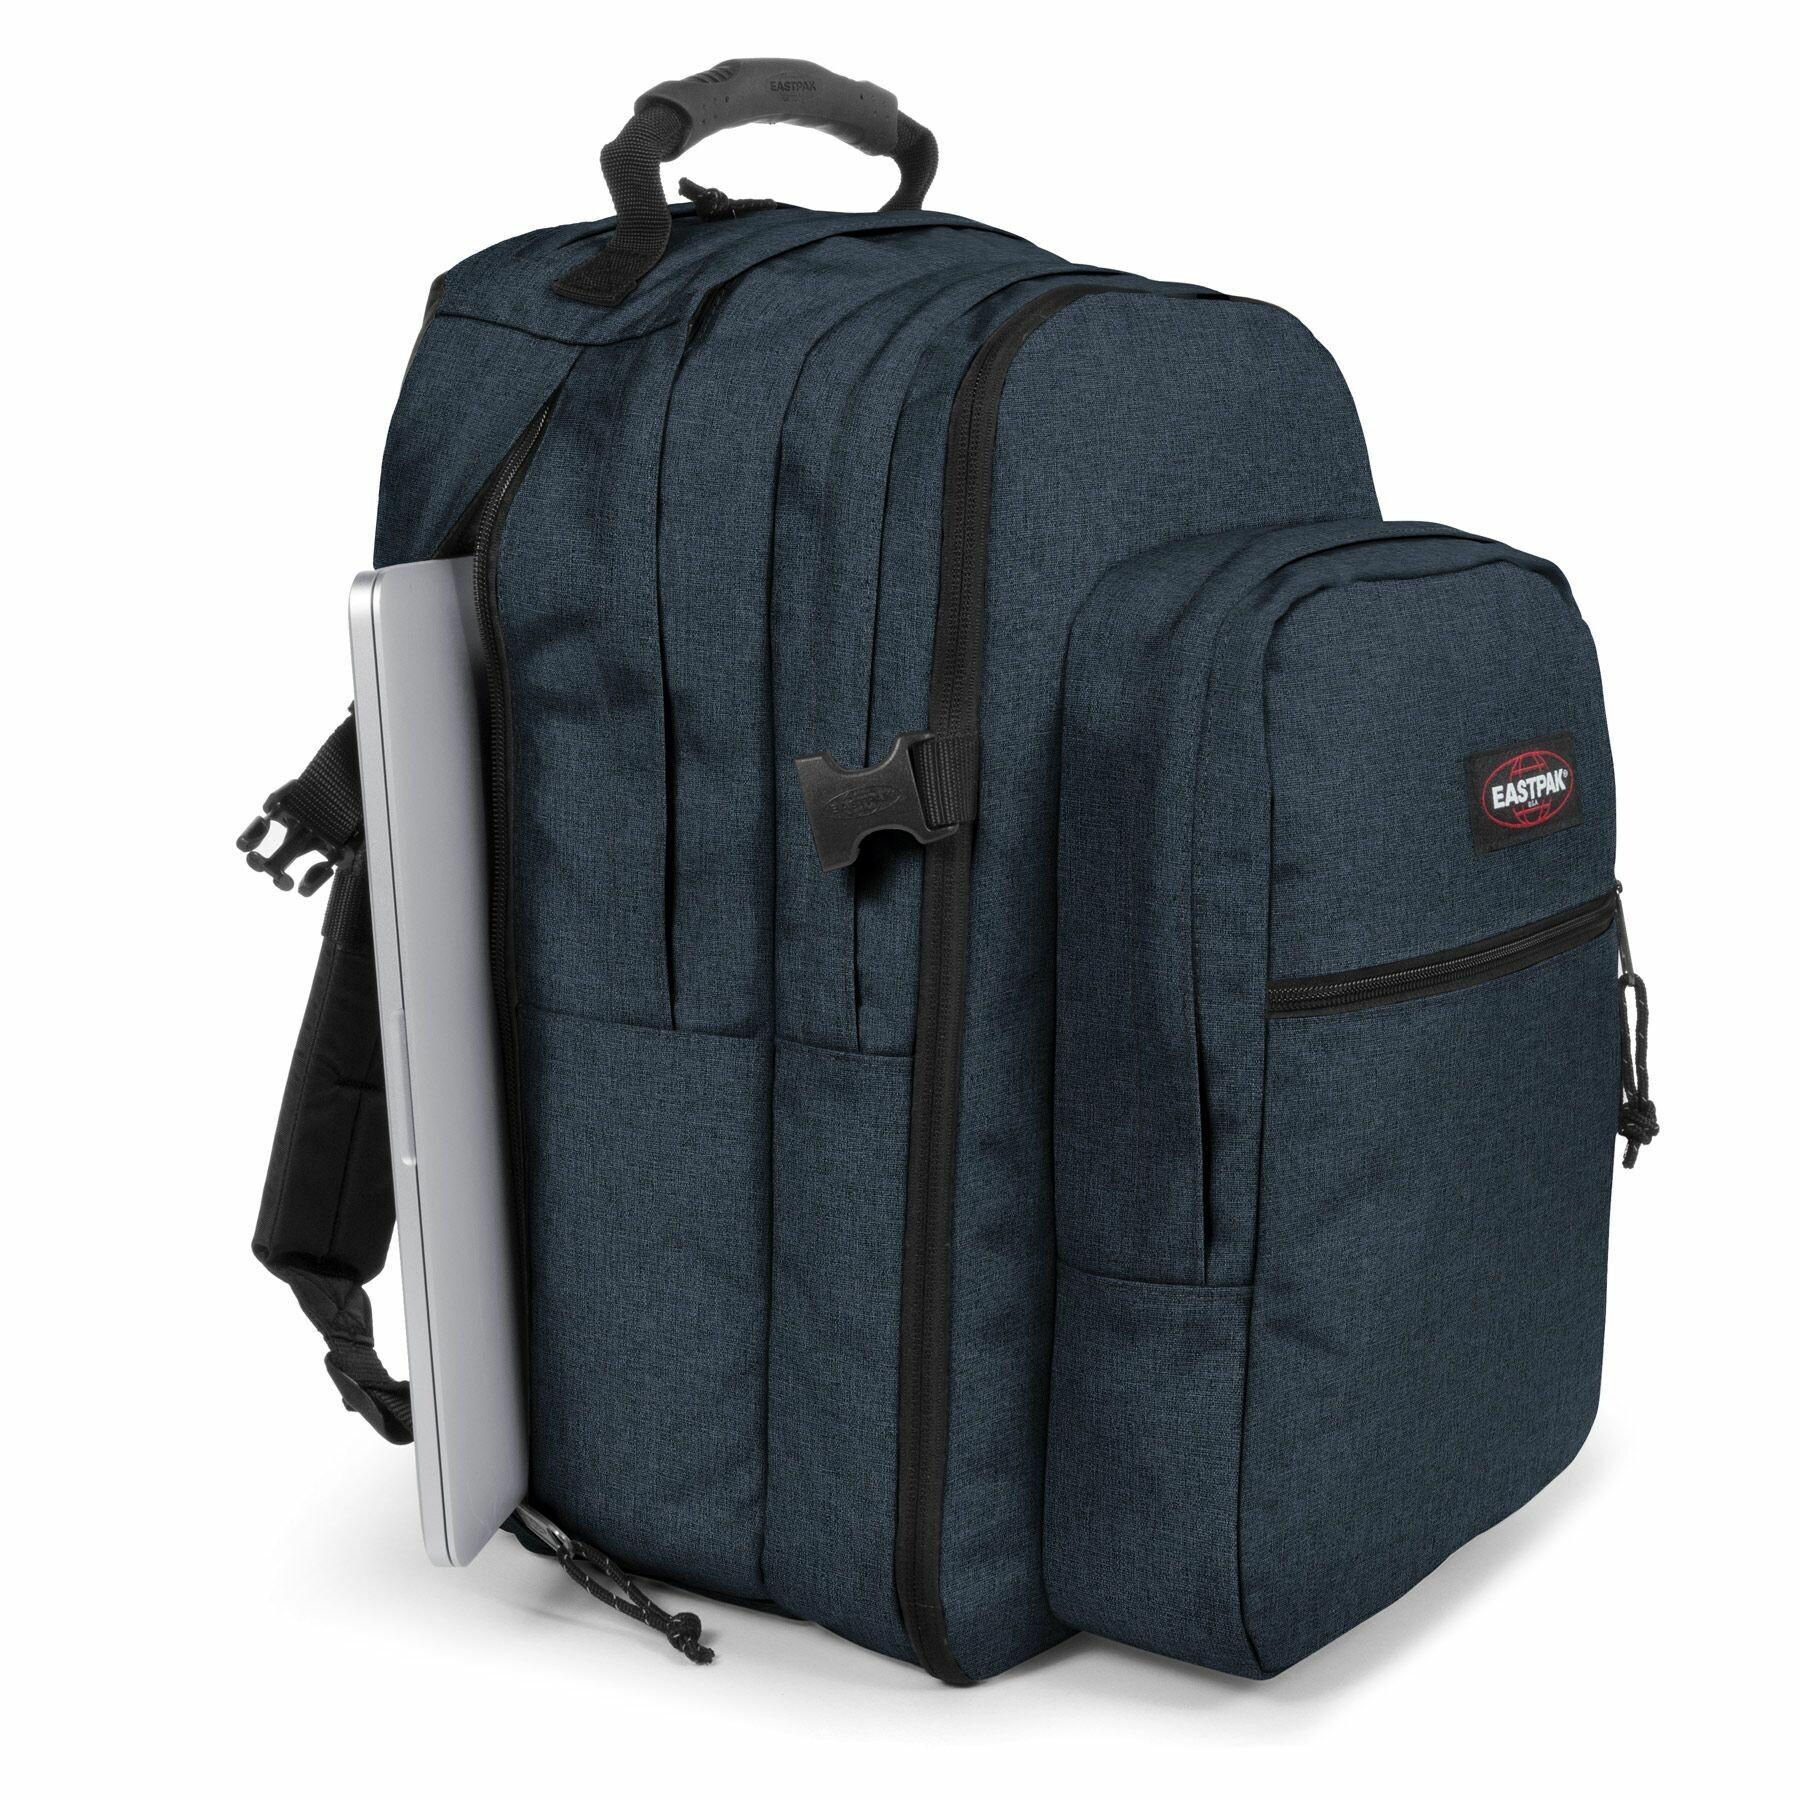 Backpack Eastpak Tutor - Backpacks - - Equipment